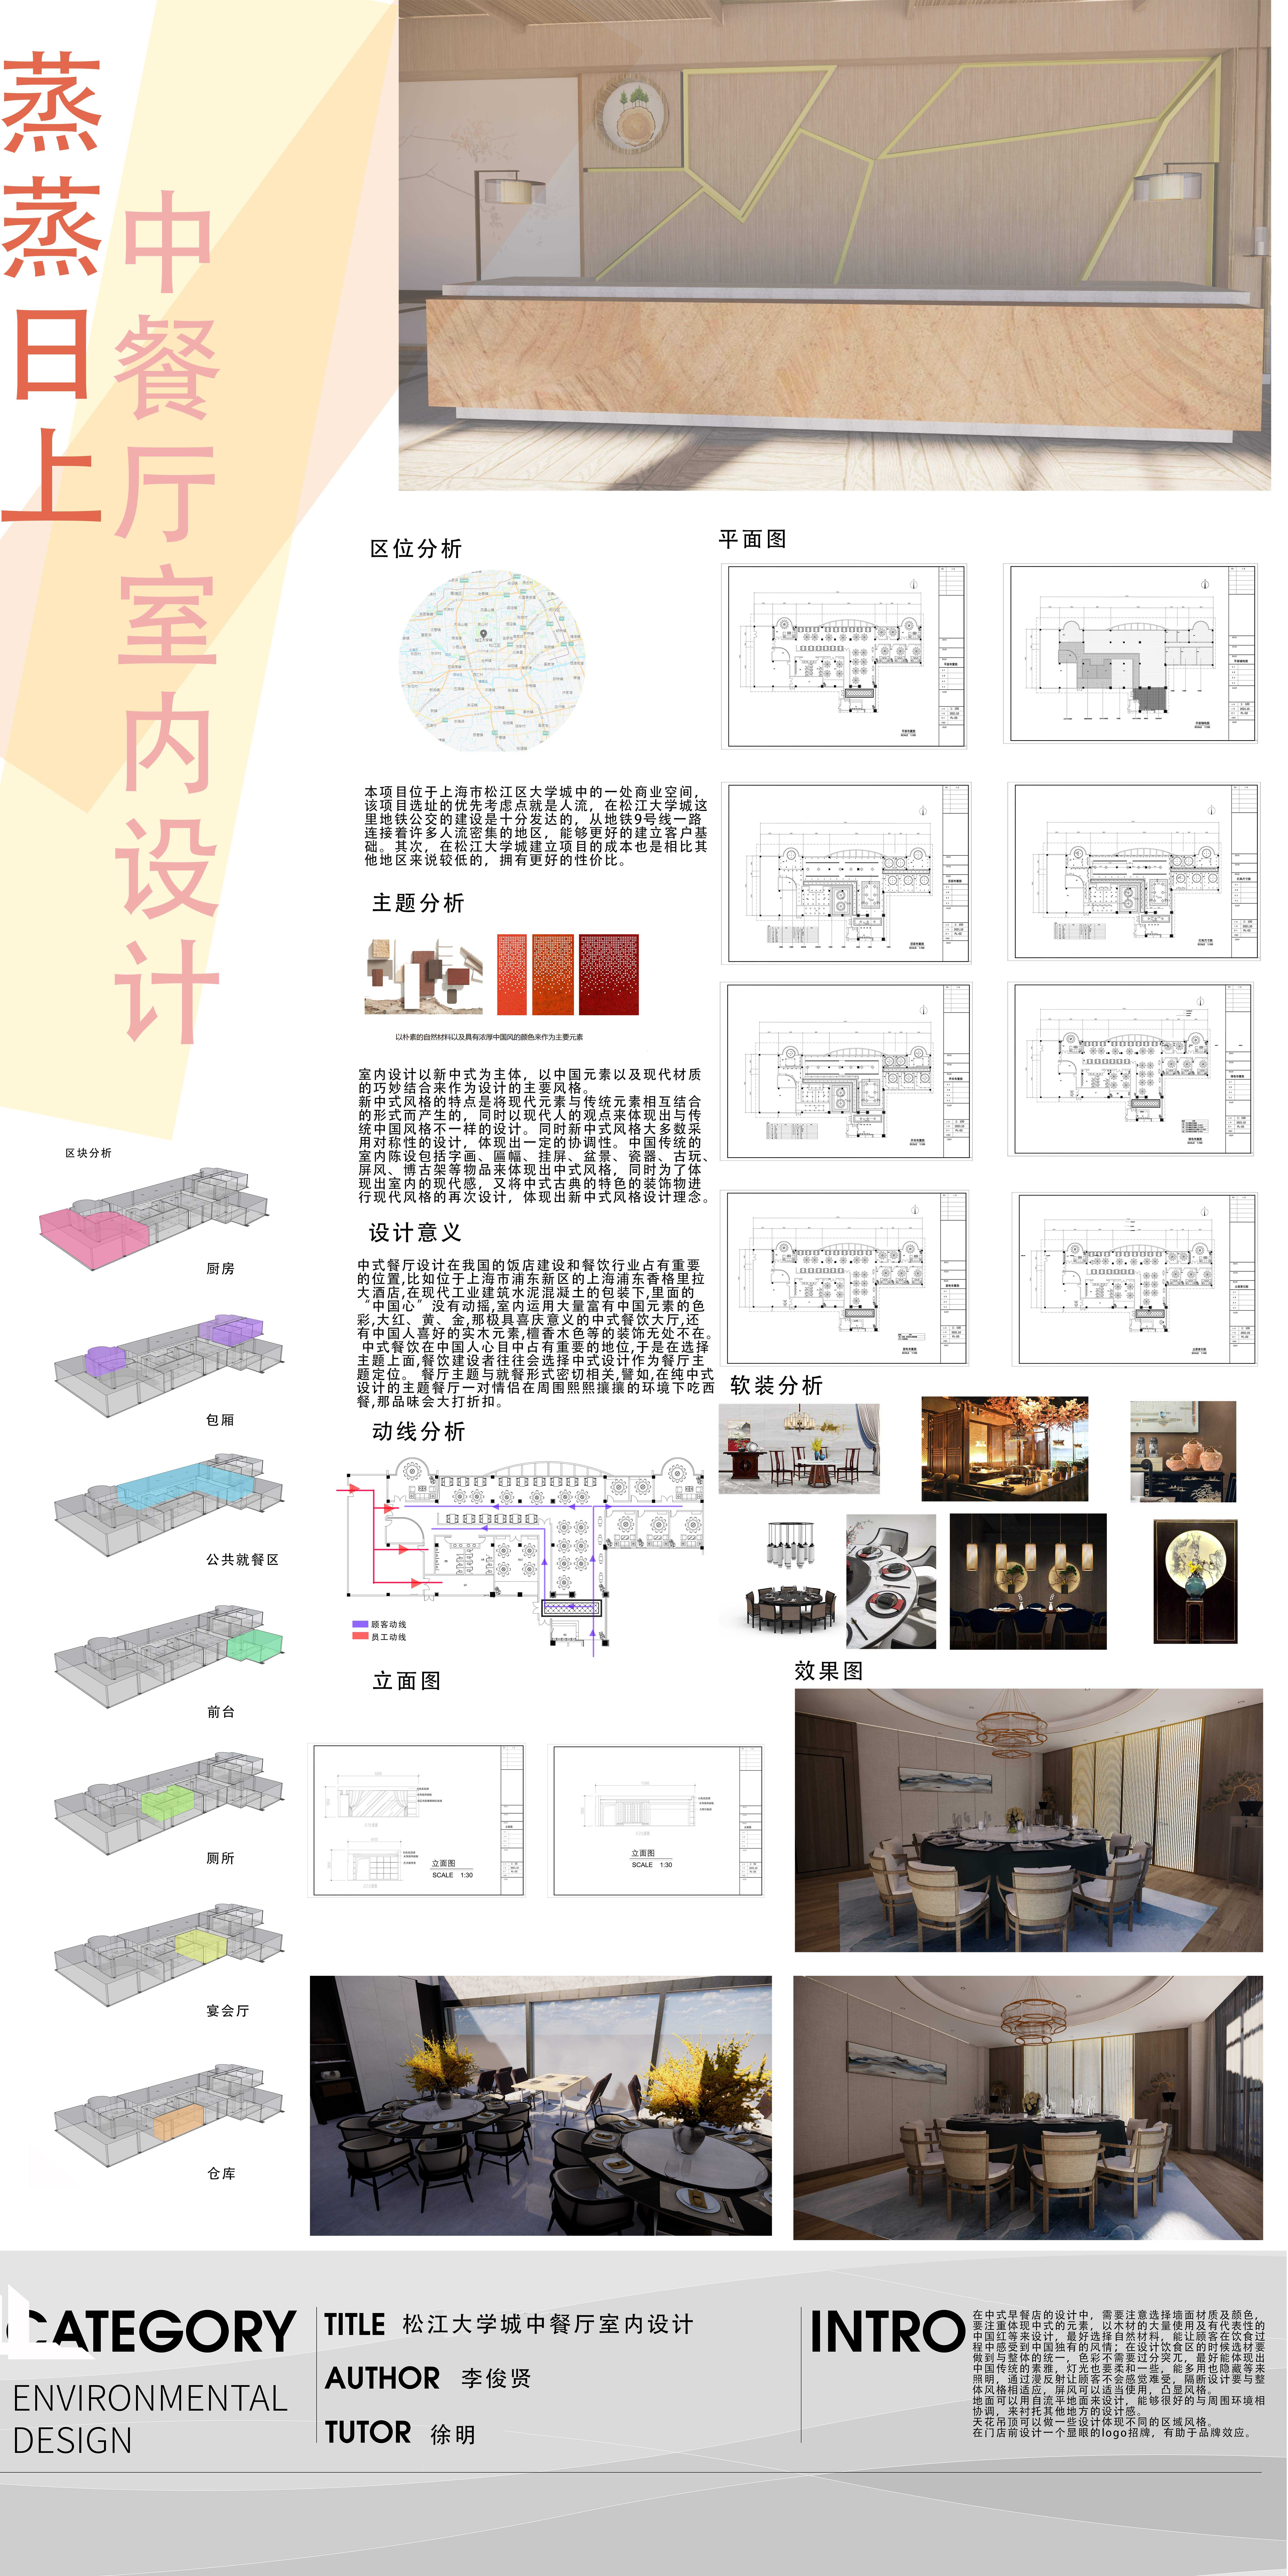 《蒸蒸日上——上海松江大学城中餐厅设计》-李俊贤